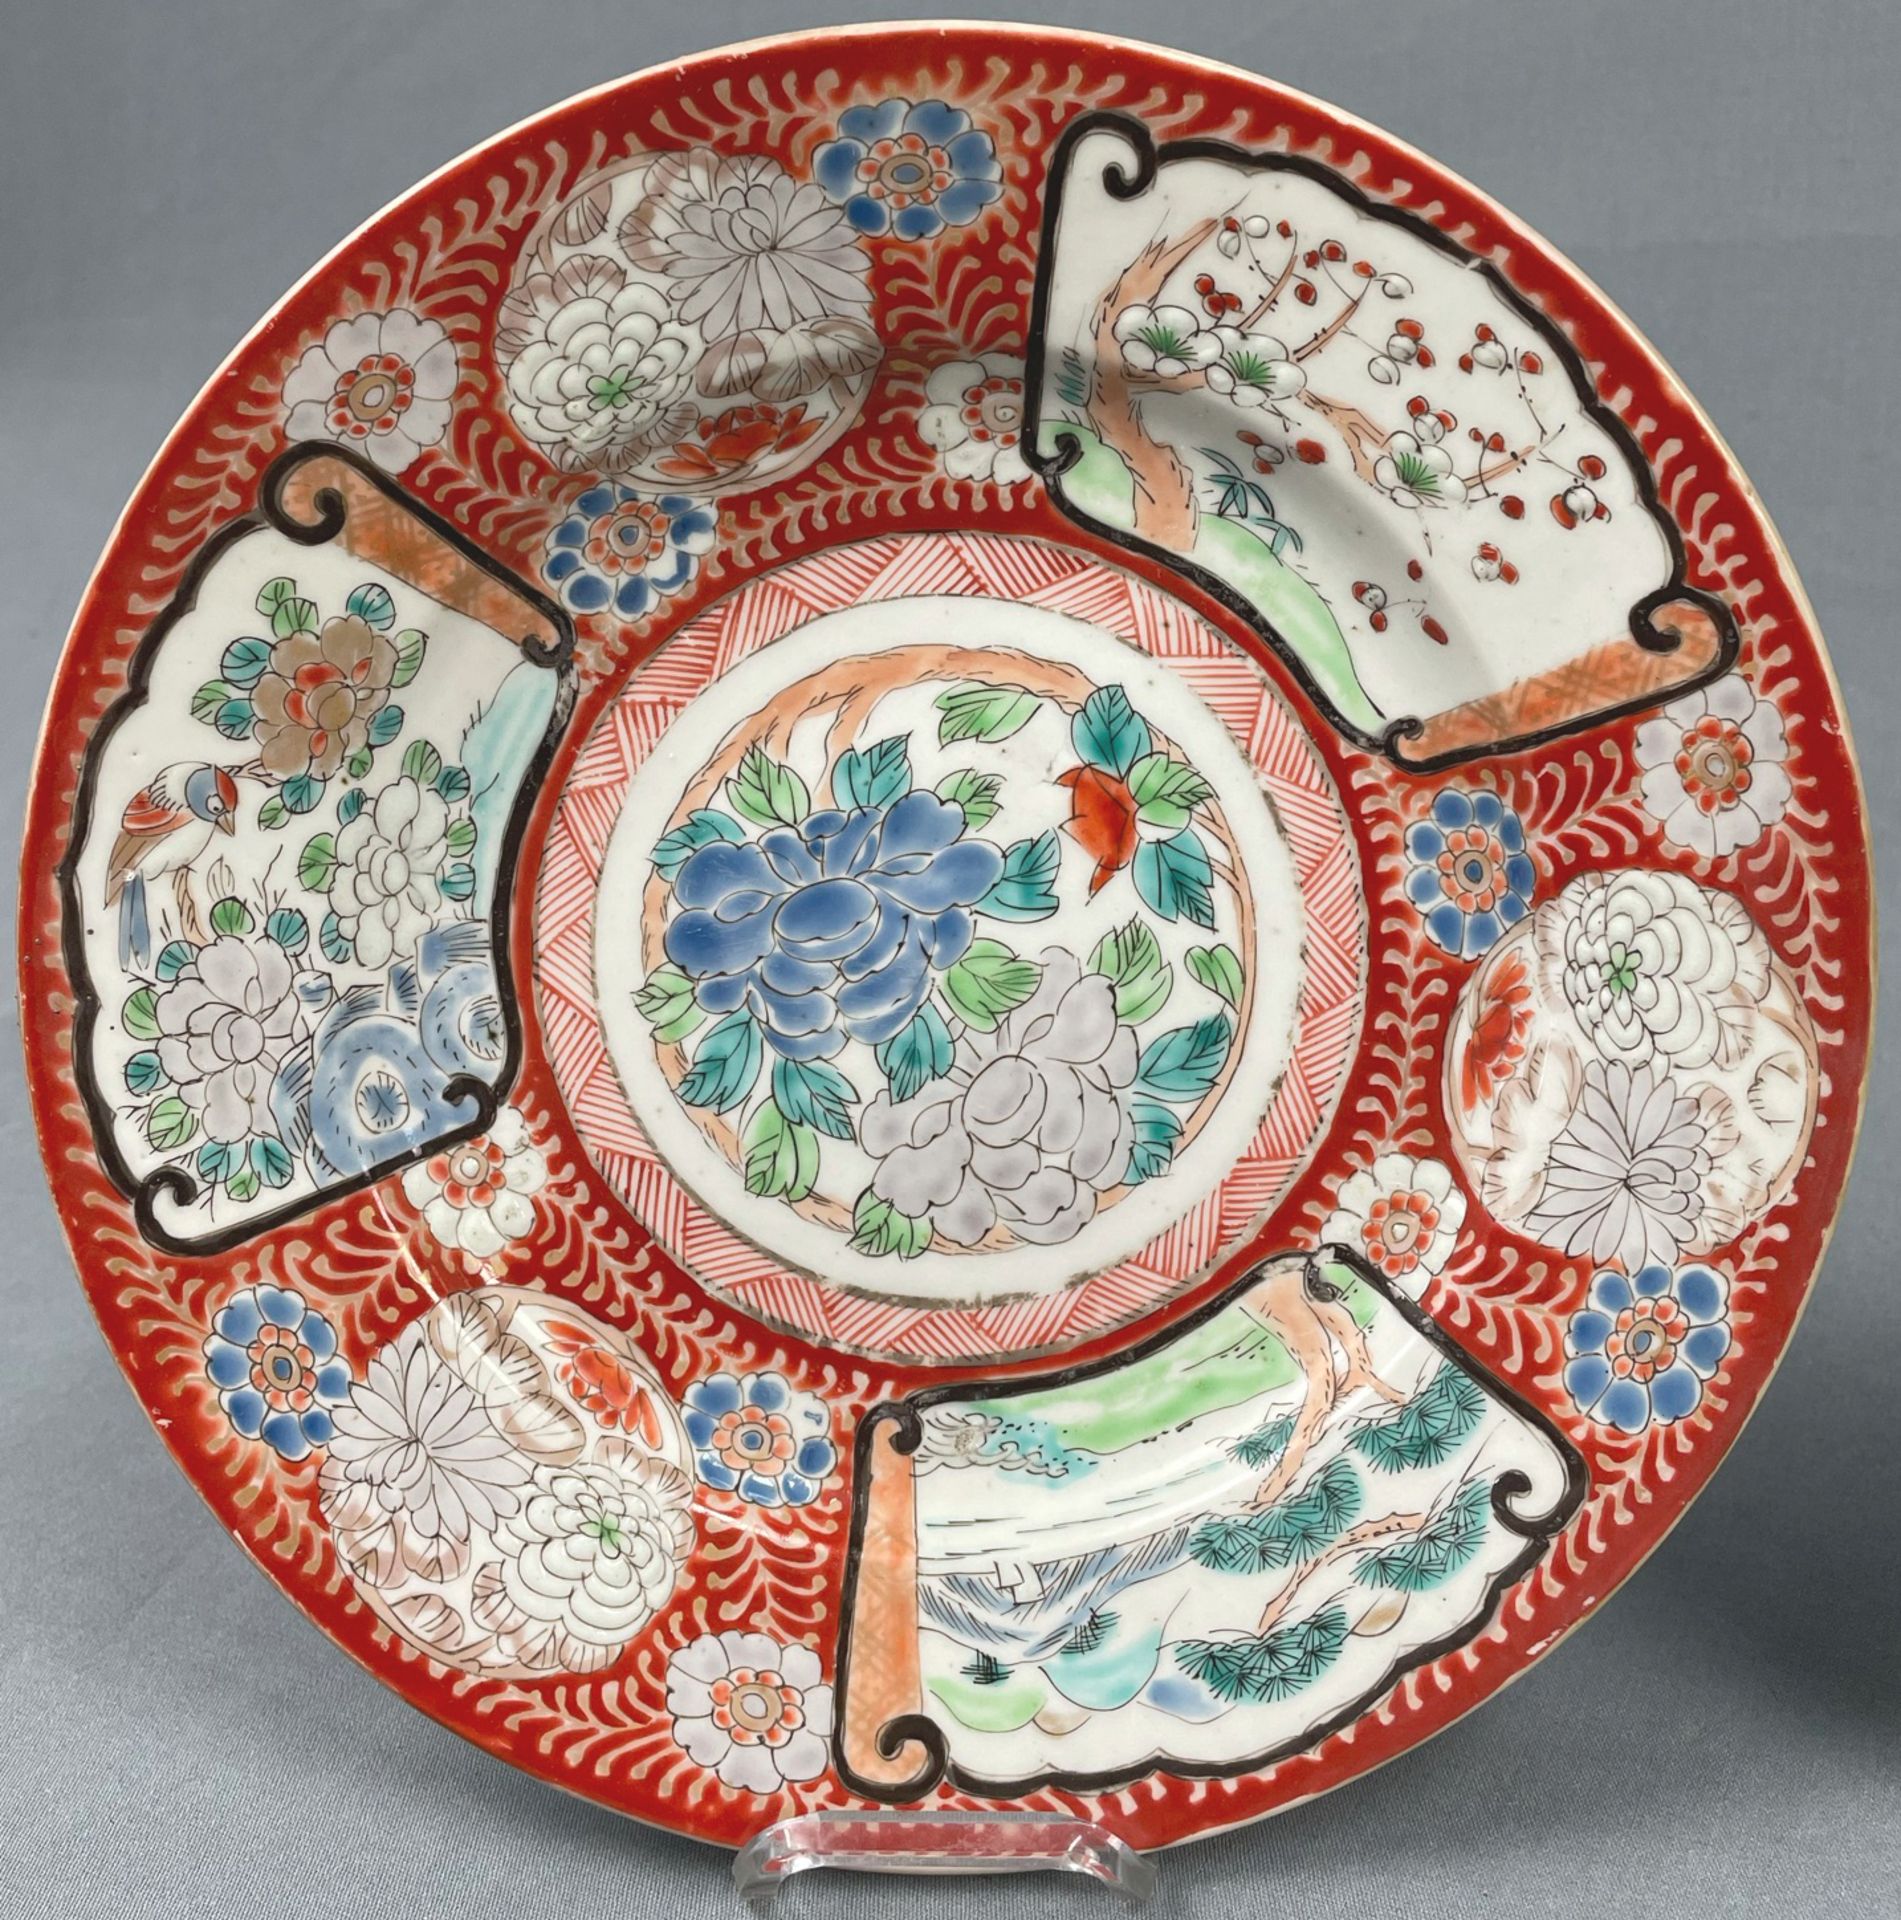 3 Teller und eine Schale. Wohl China antik 18. / 19. Jahrhundert? - Image 2 of 10